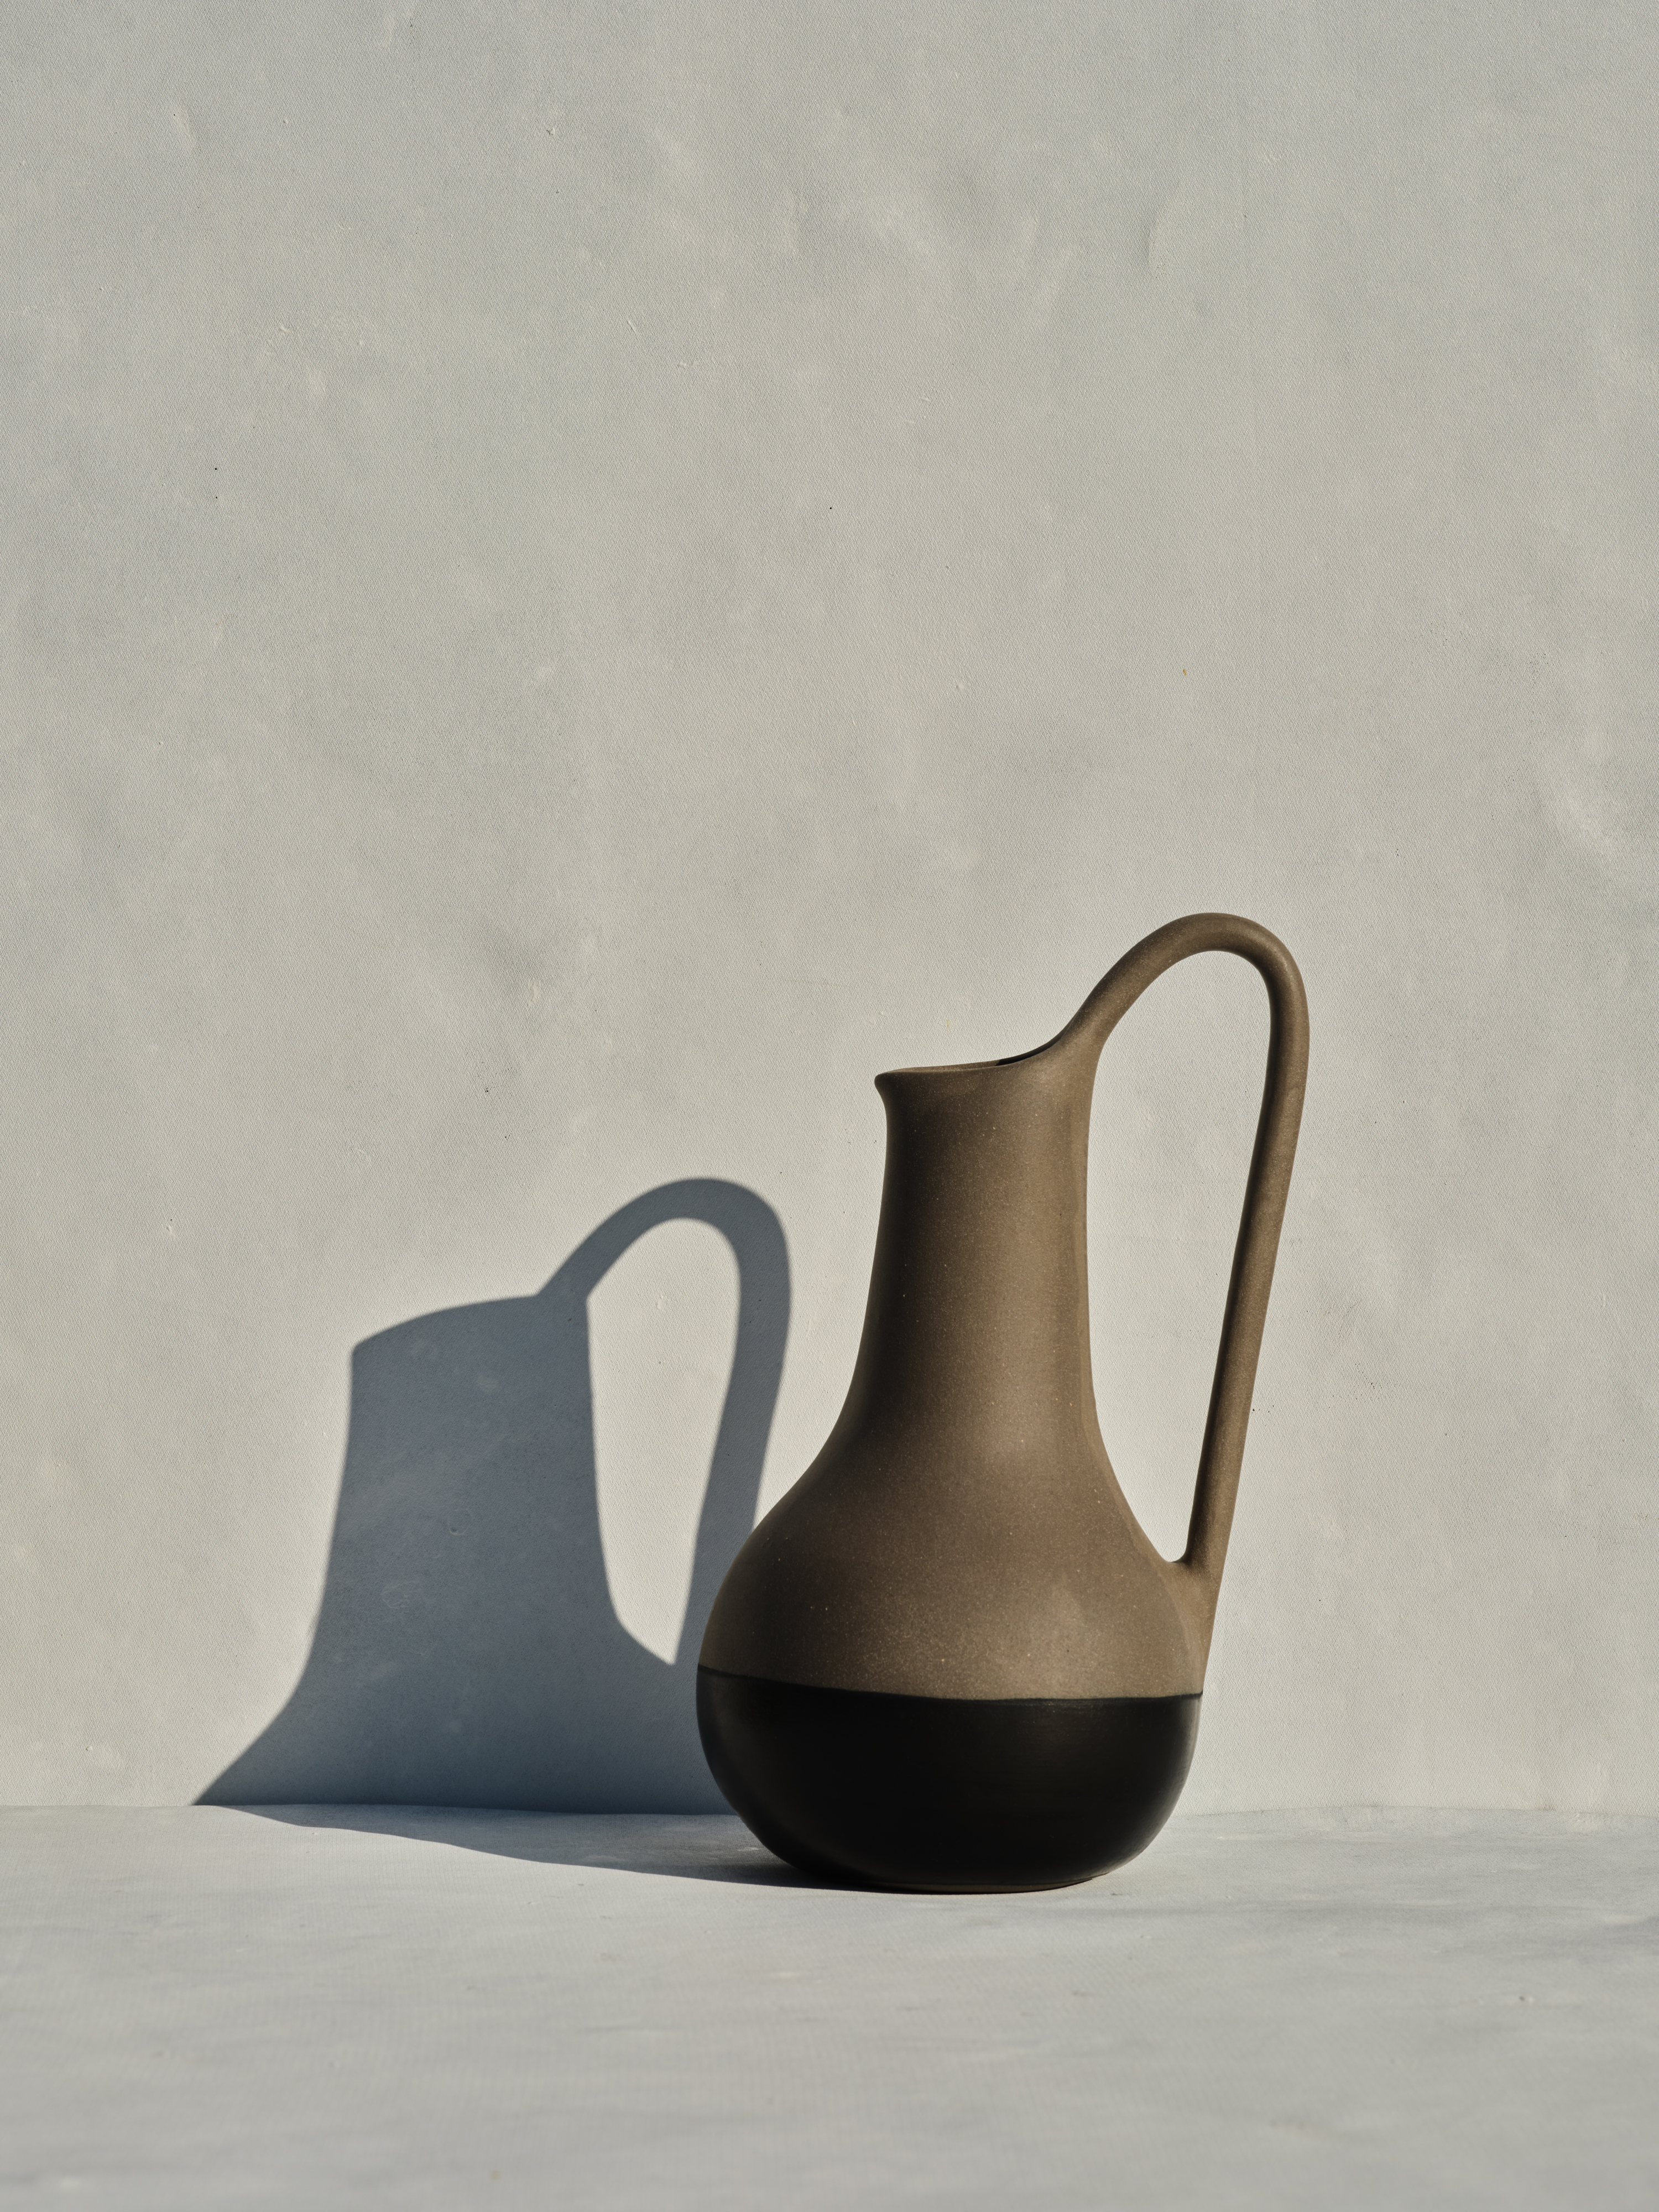 OLPE - Black/grey ceramic vase with one handle